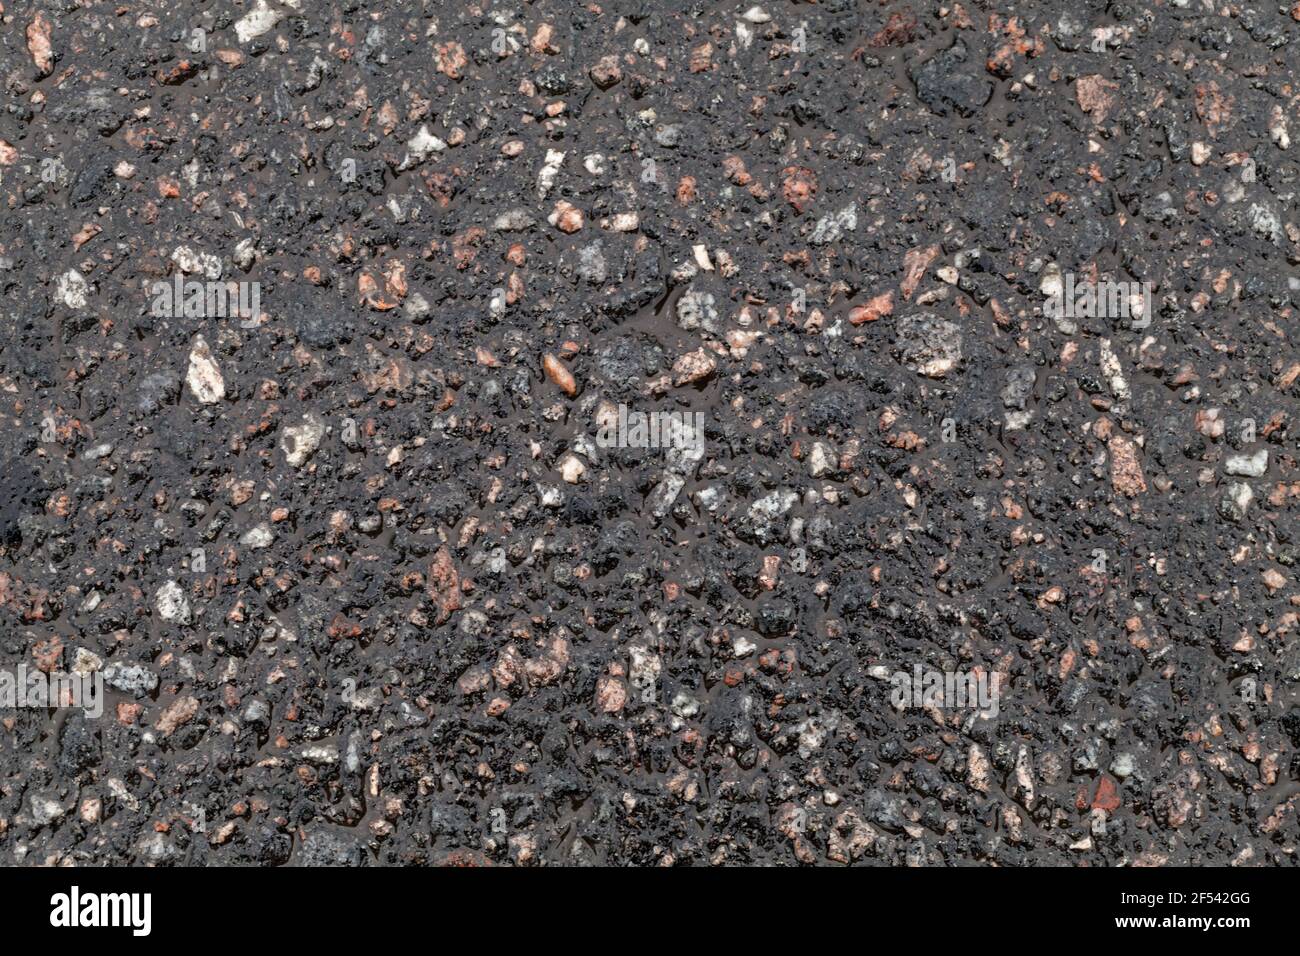 Superficie stradale bagnata. Texture asfaltata, pavimentazione stradale scura costituita da roccia frantumata mescolata con catrame. Foto di sfondo Foto Stock